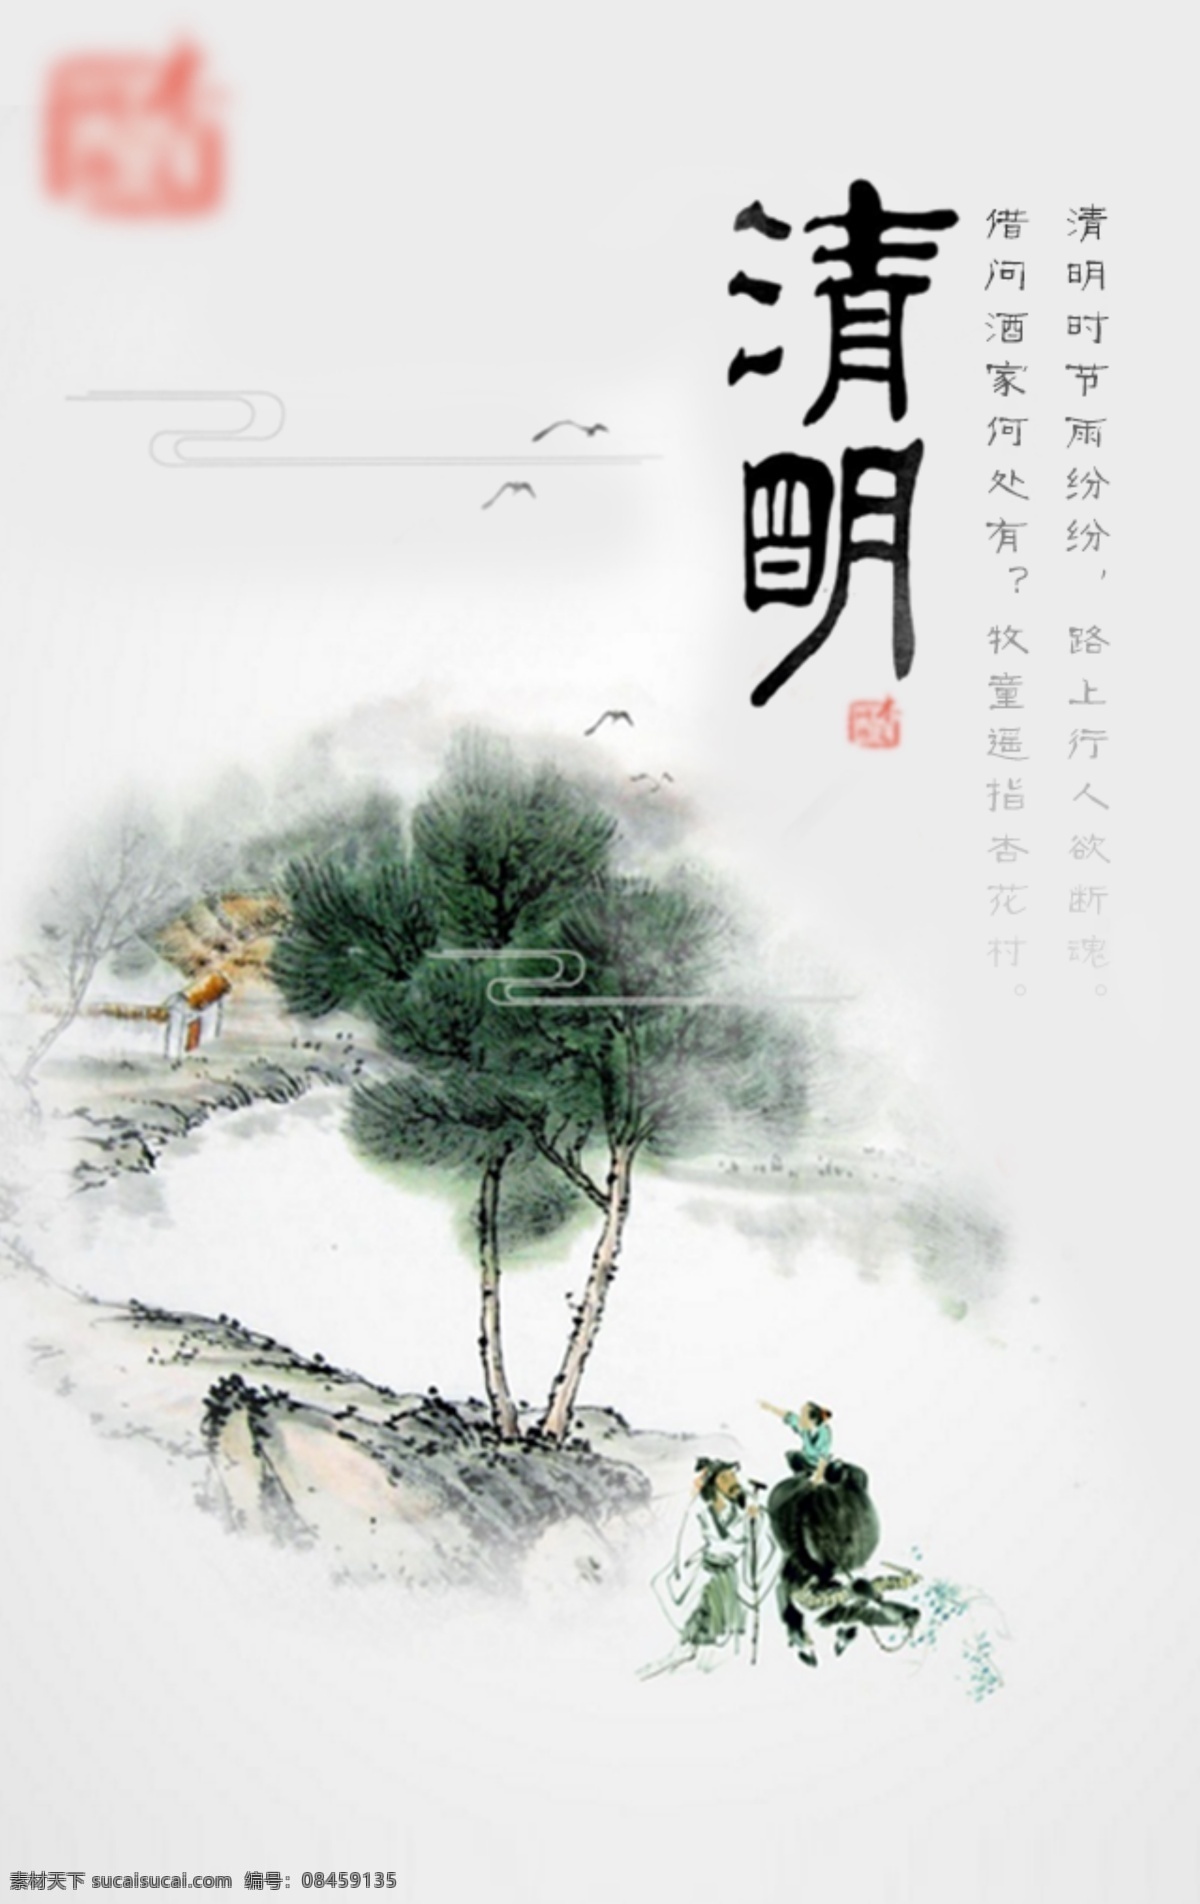 清明海报 清明 中国 风 白色 商城海报 淘宝海报 雨 章印 中国风